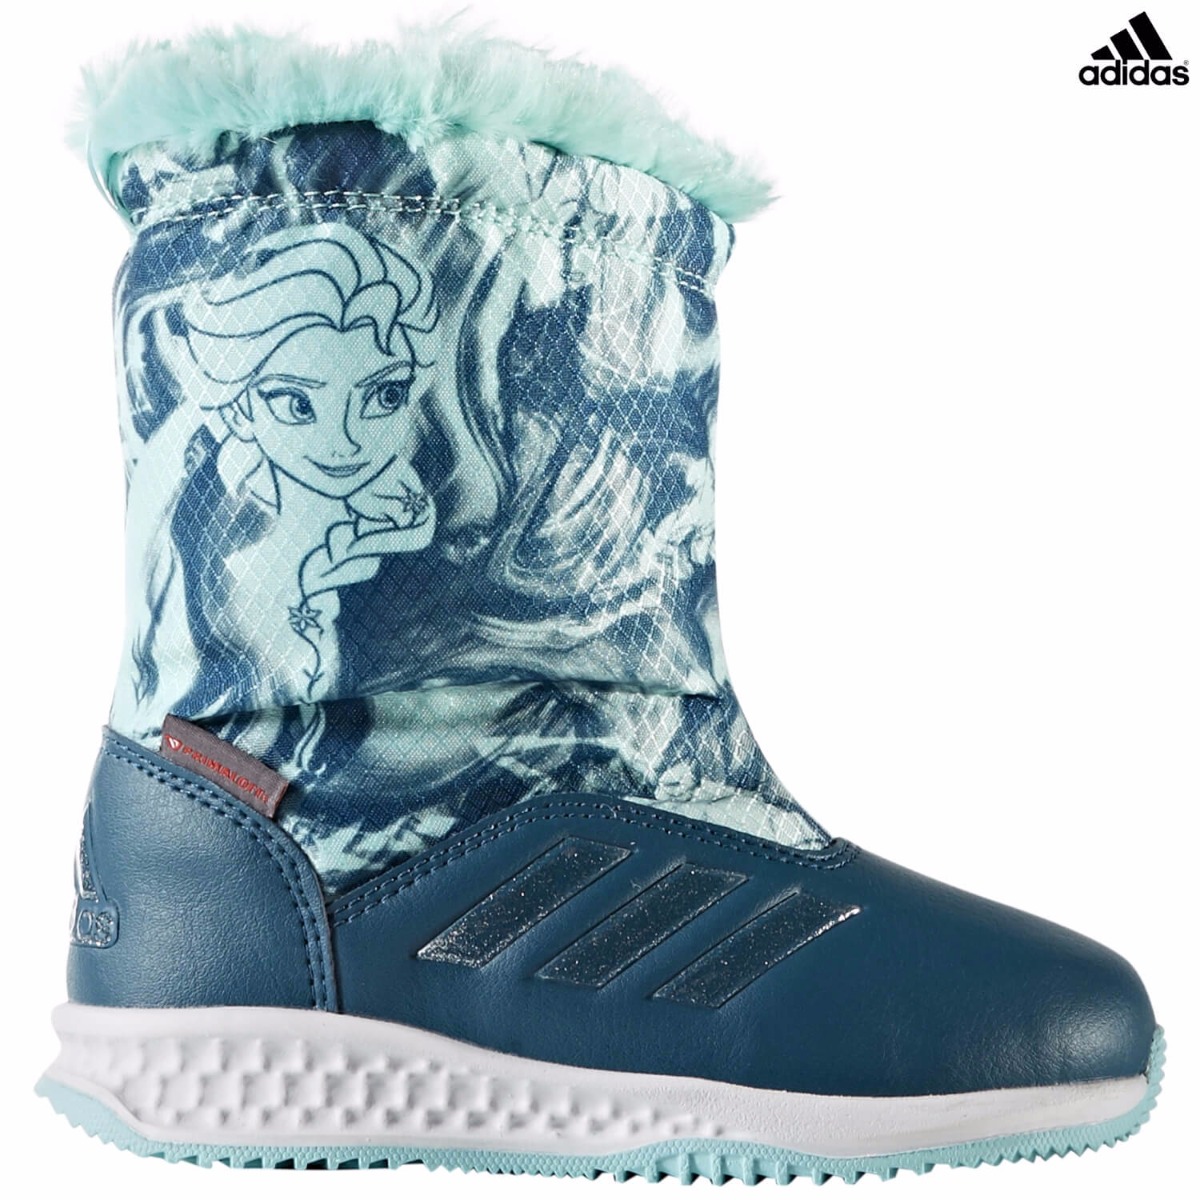 adidas frozen boots